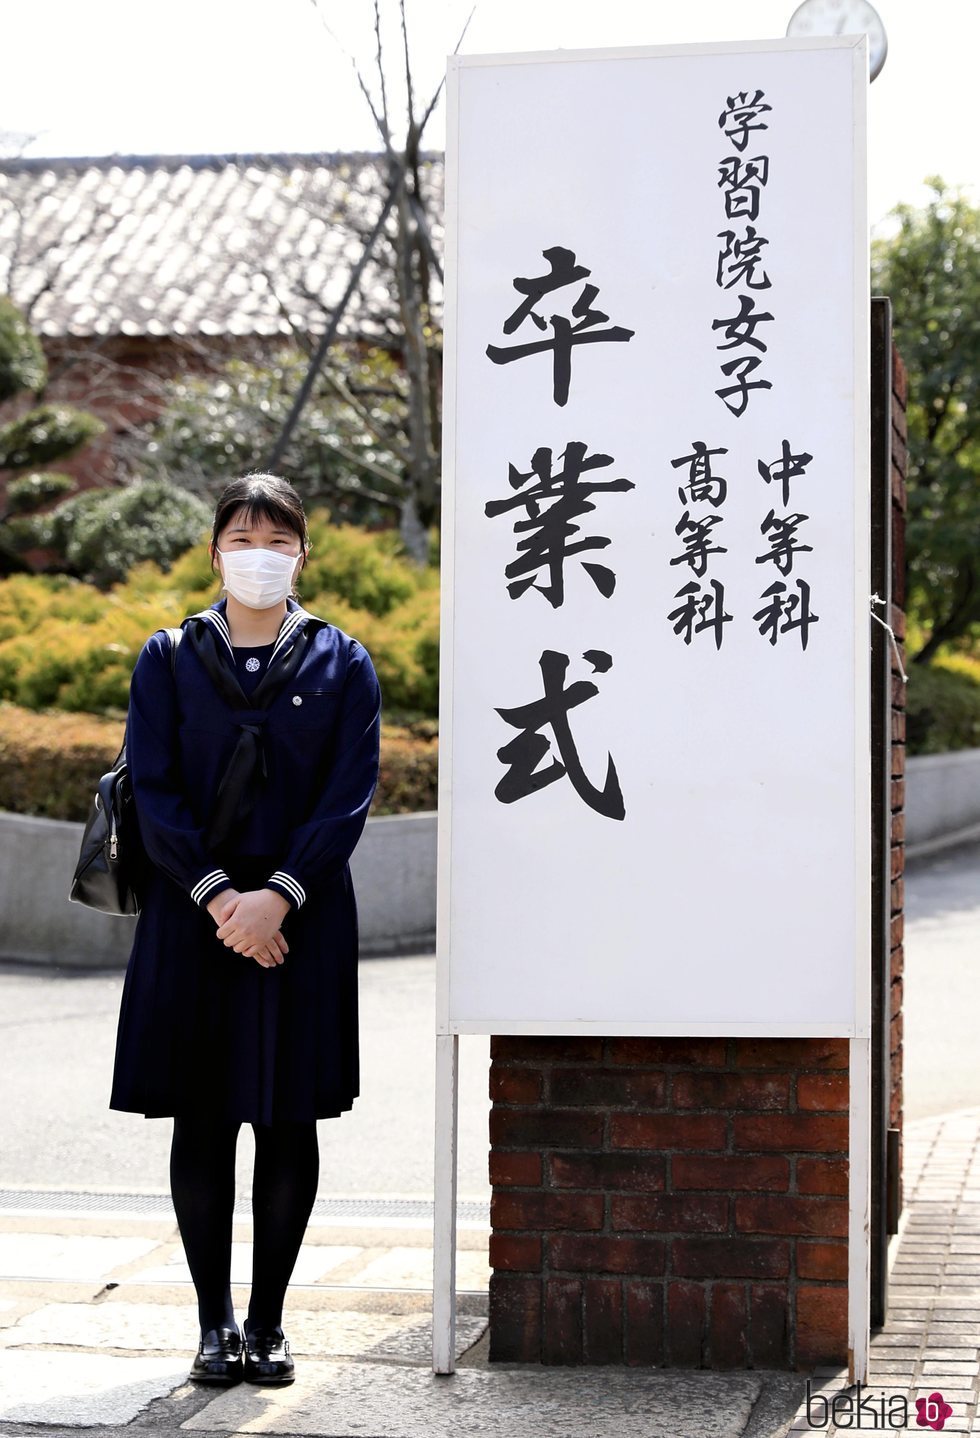 Aiko de Japón se gradúa con mascarilla por el coronavirus